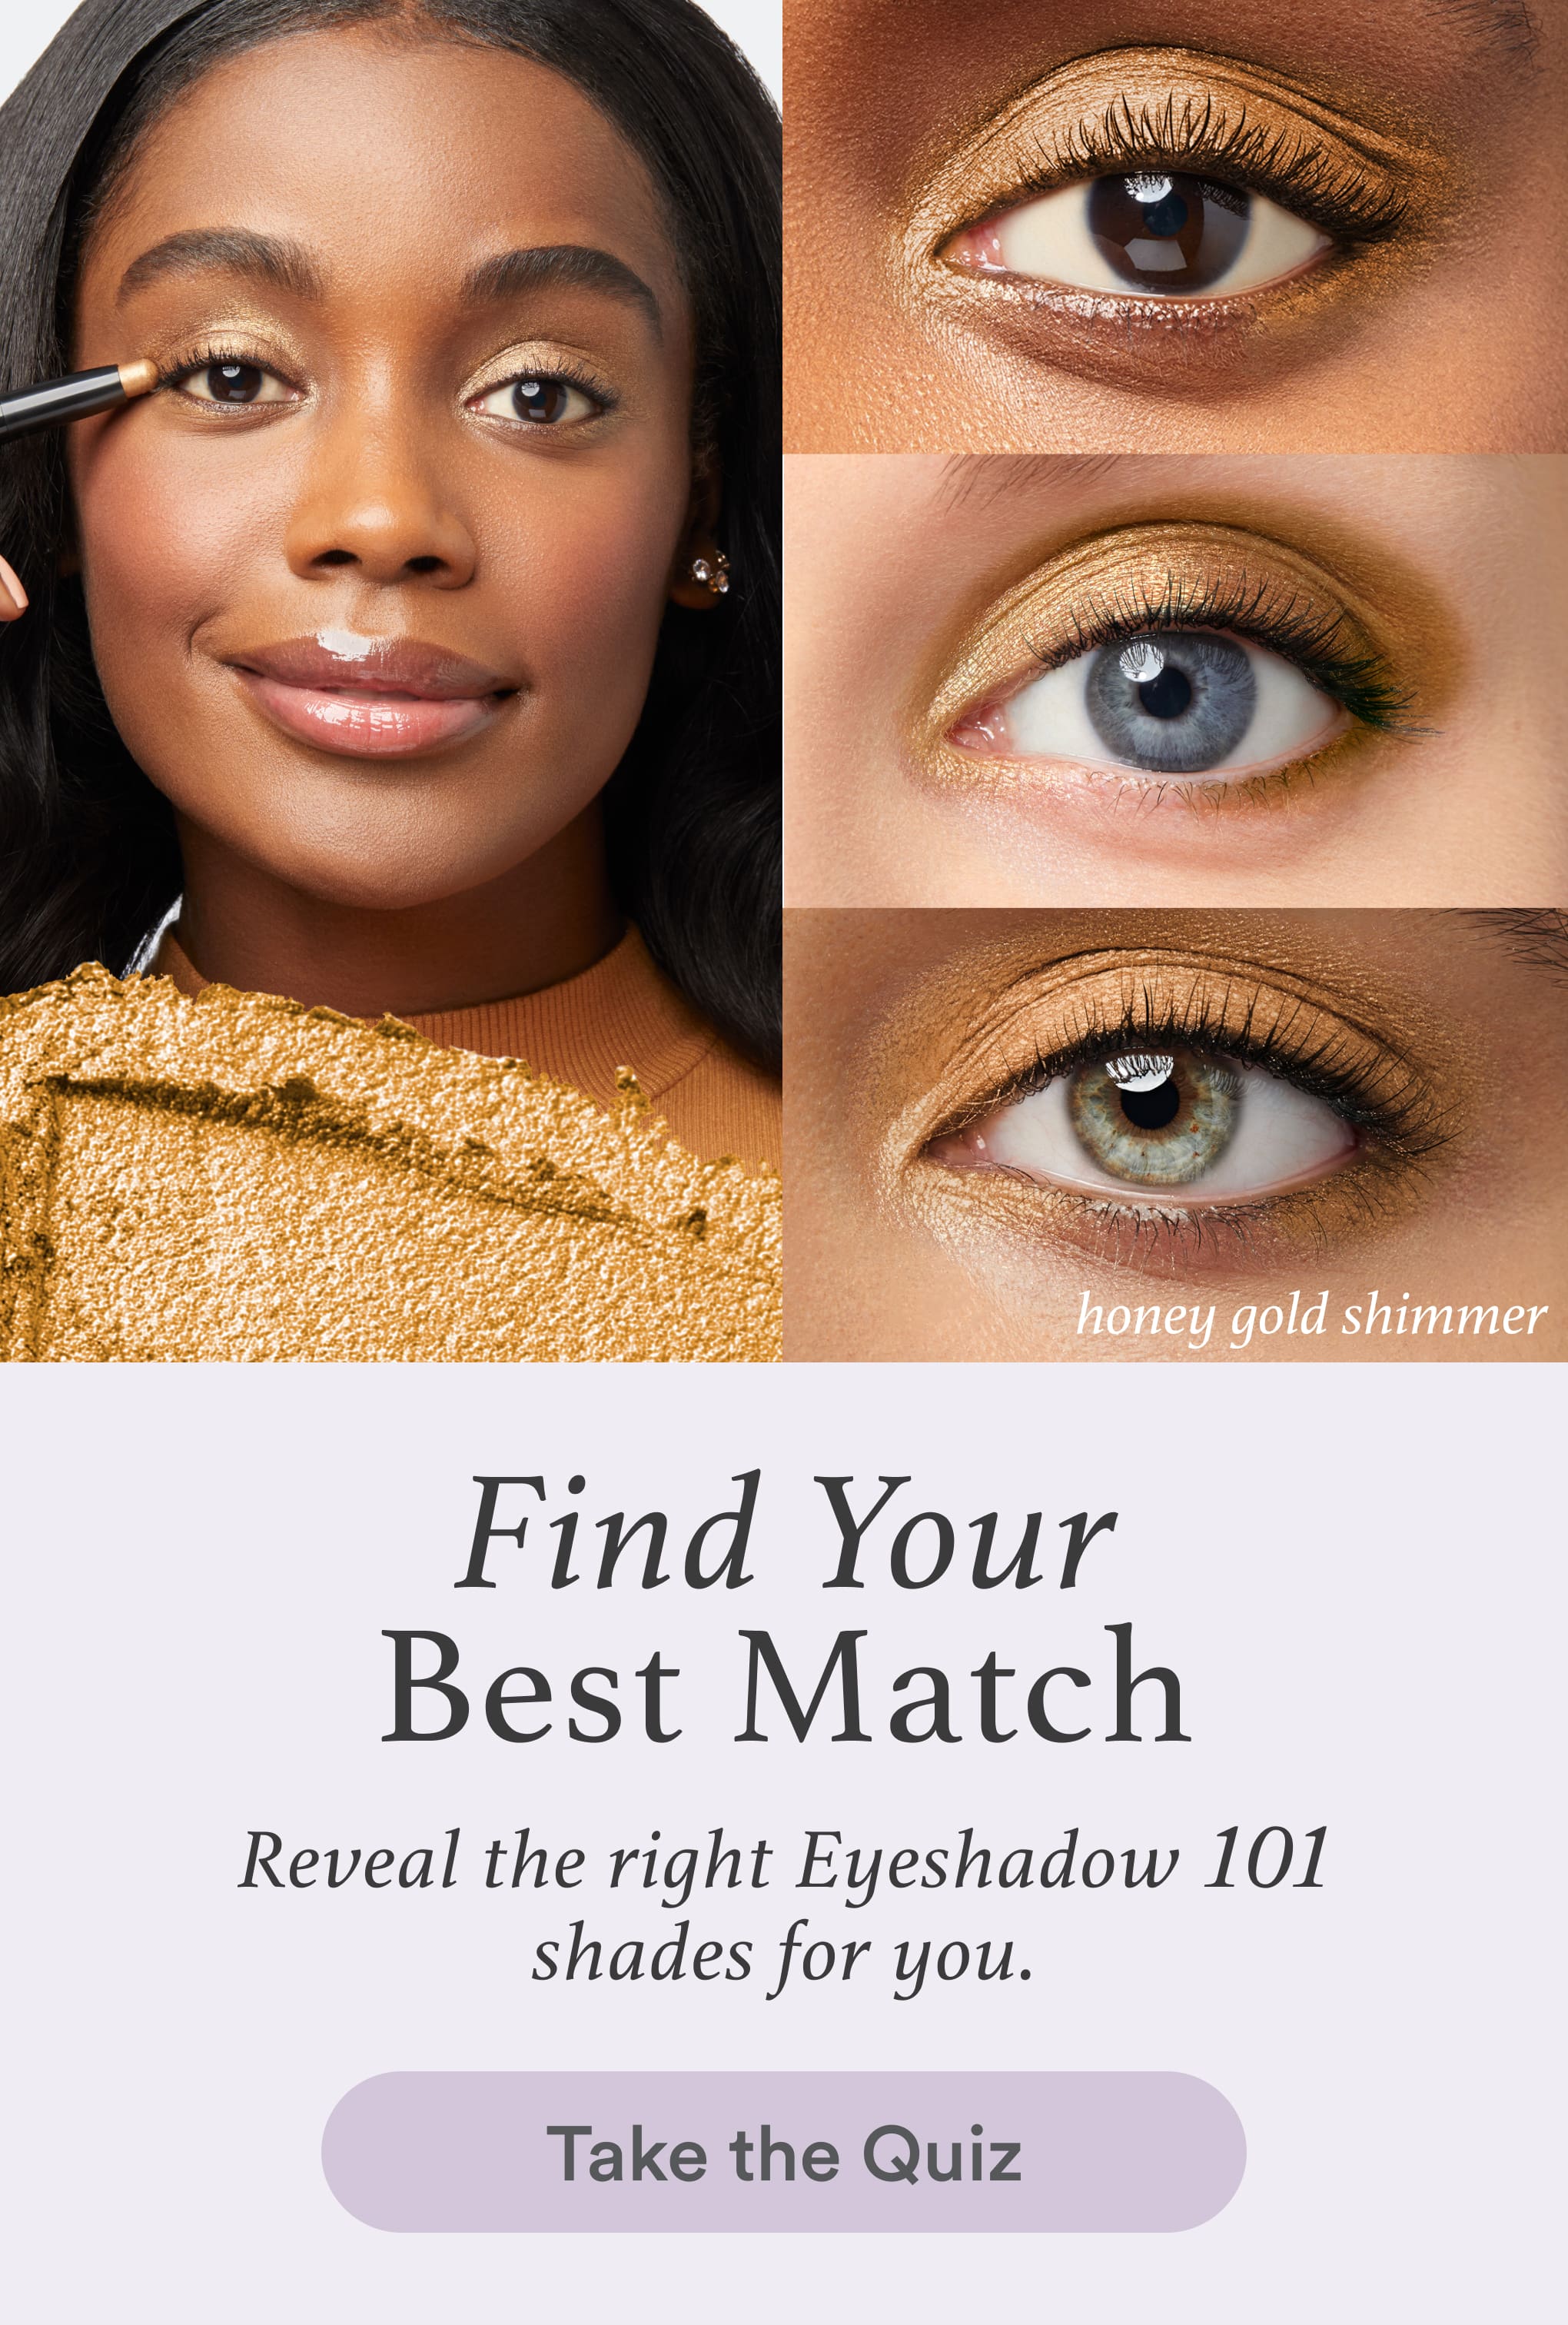 Eyes Promotional Image